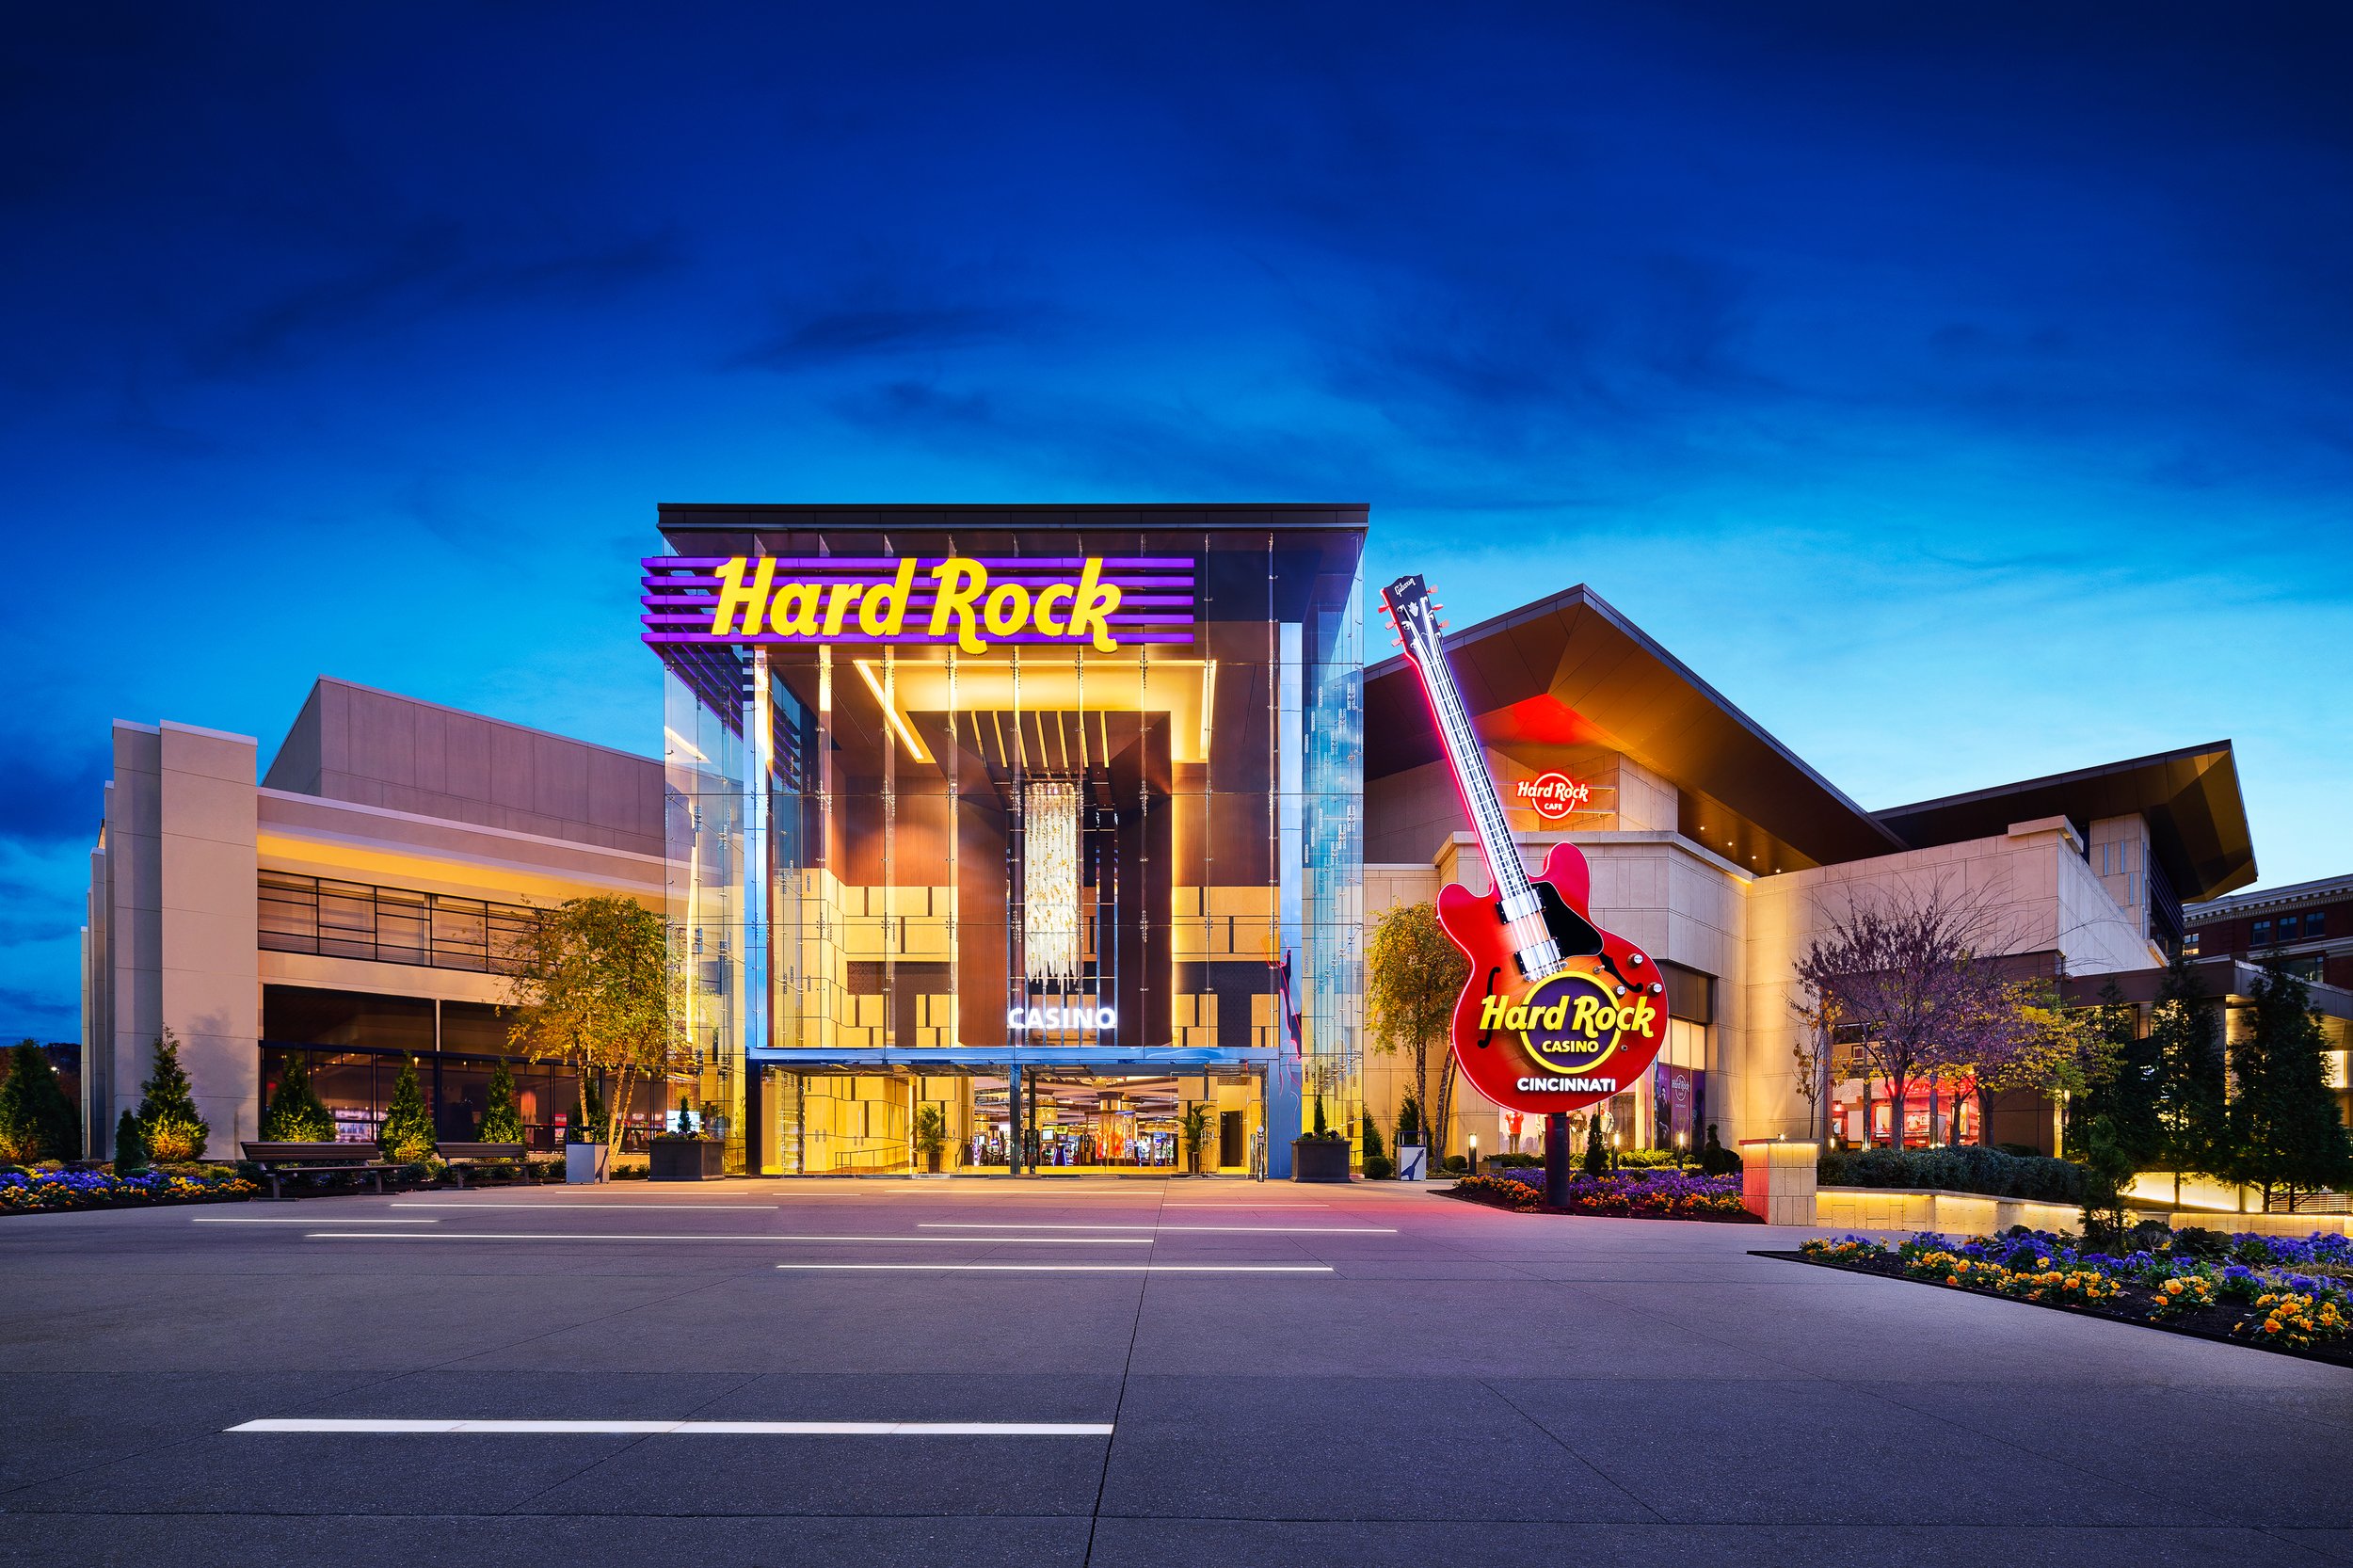 002 Hard Rock Cincinnati.jpg